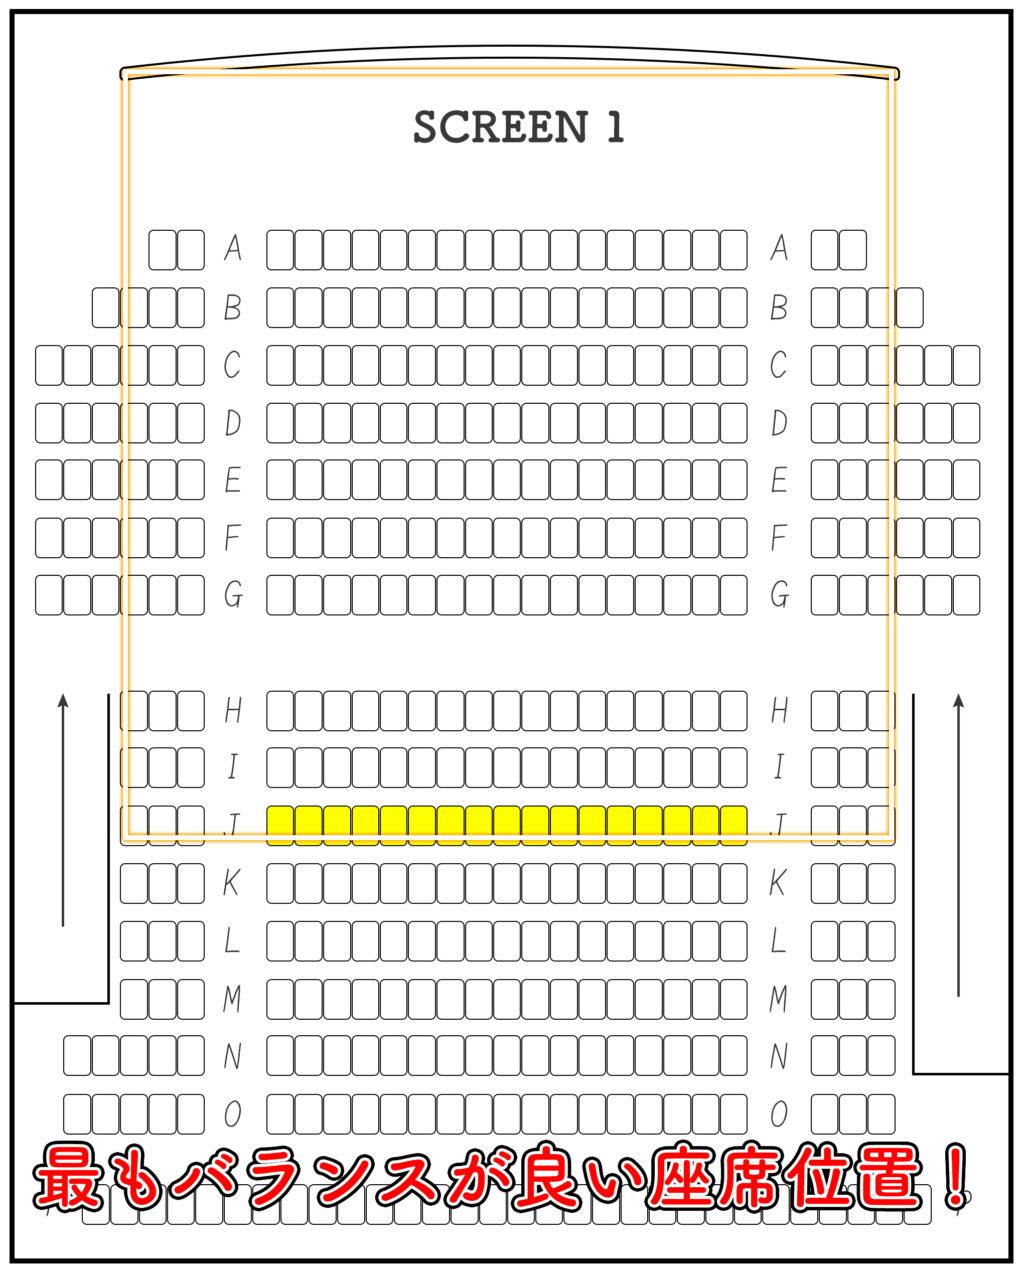 映画館で見やすい座席はどの位置 目的ごとにおすすめな座席位置を紹介 Yugoの不思議な音楽の国